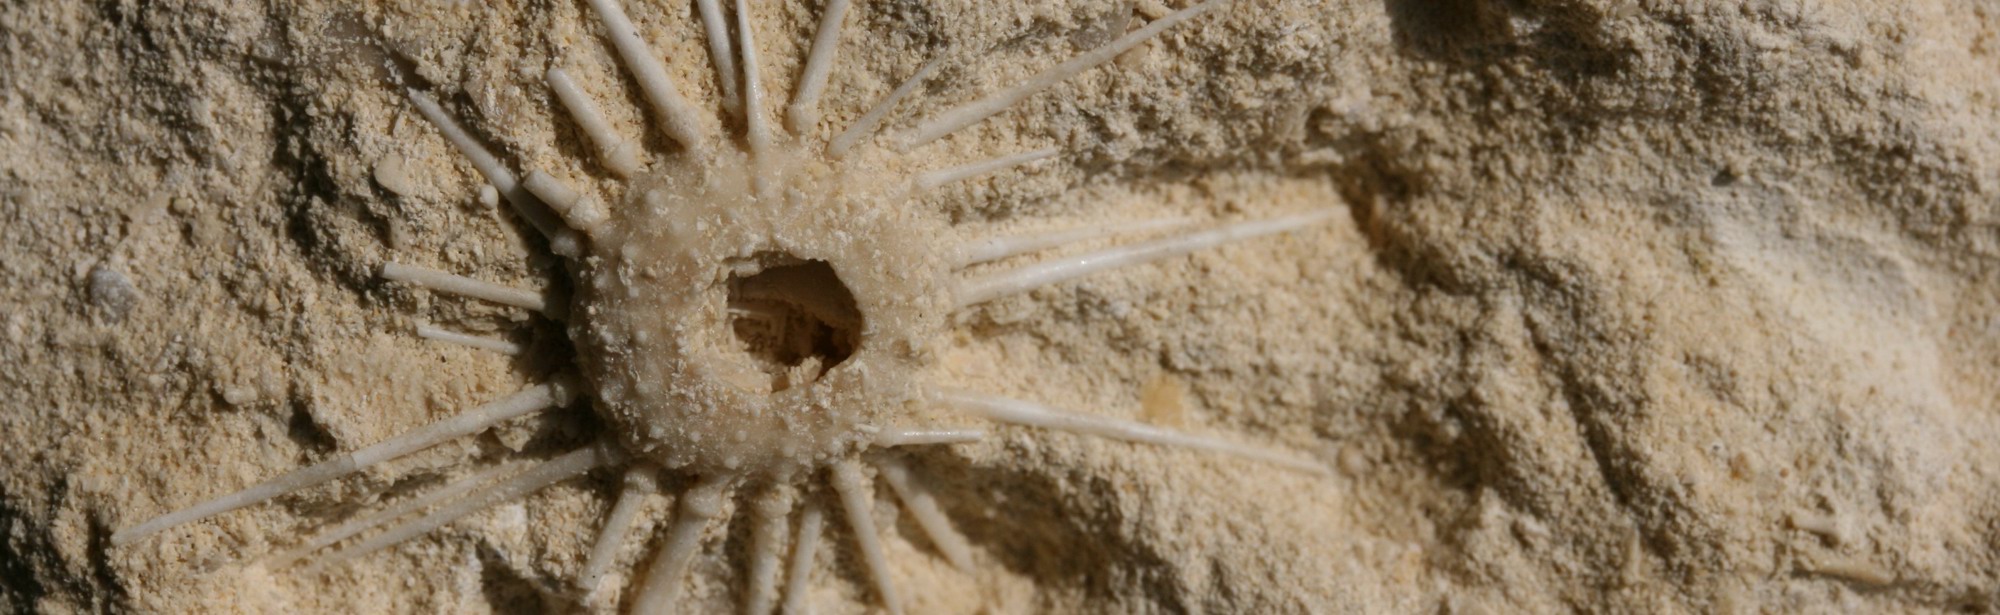 Close-up van mergelsteen met een zee egel afdruk 